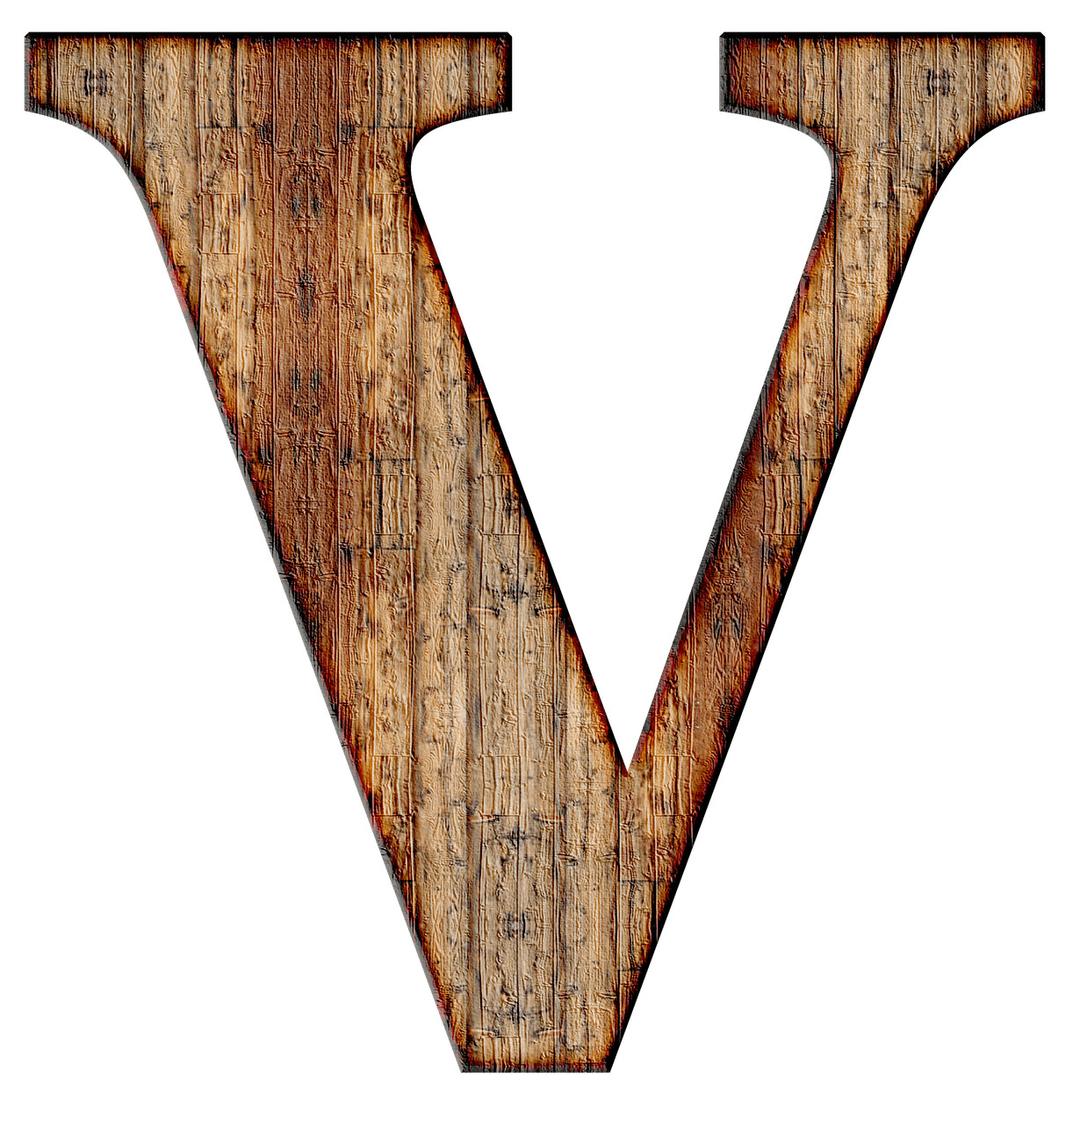 Wooden Capital Letter V png transparent